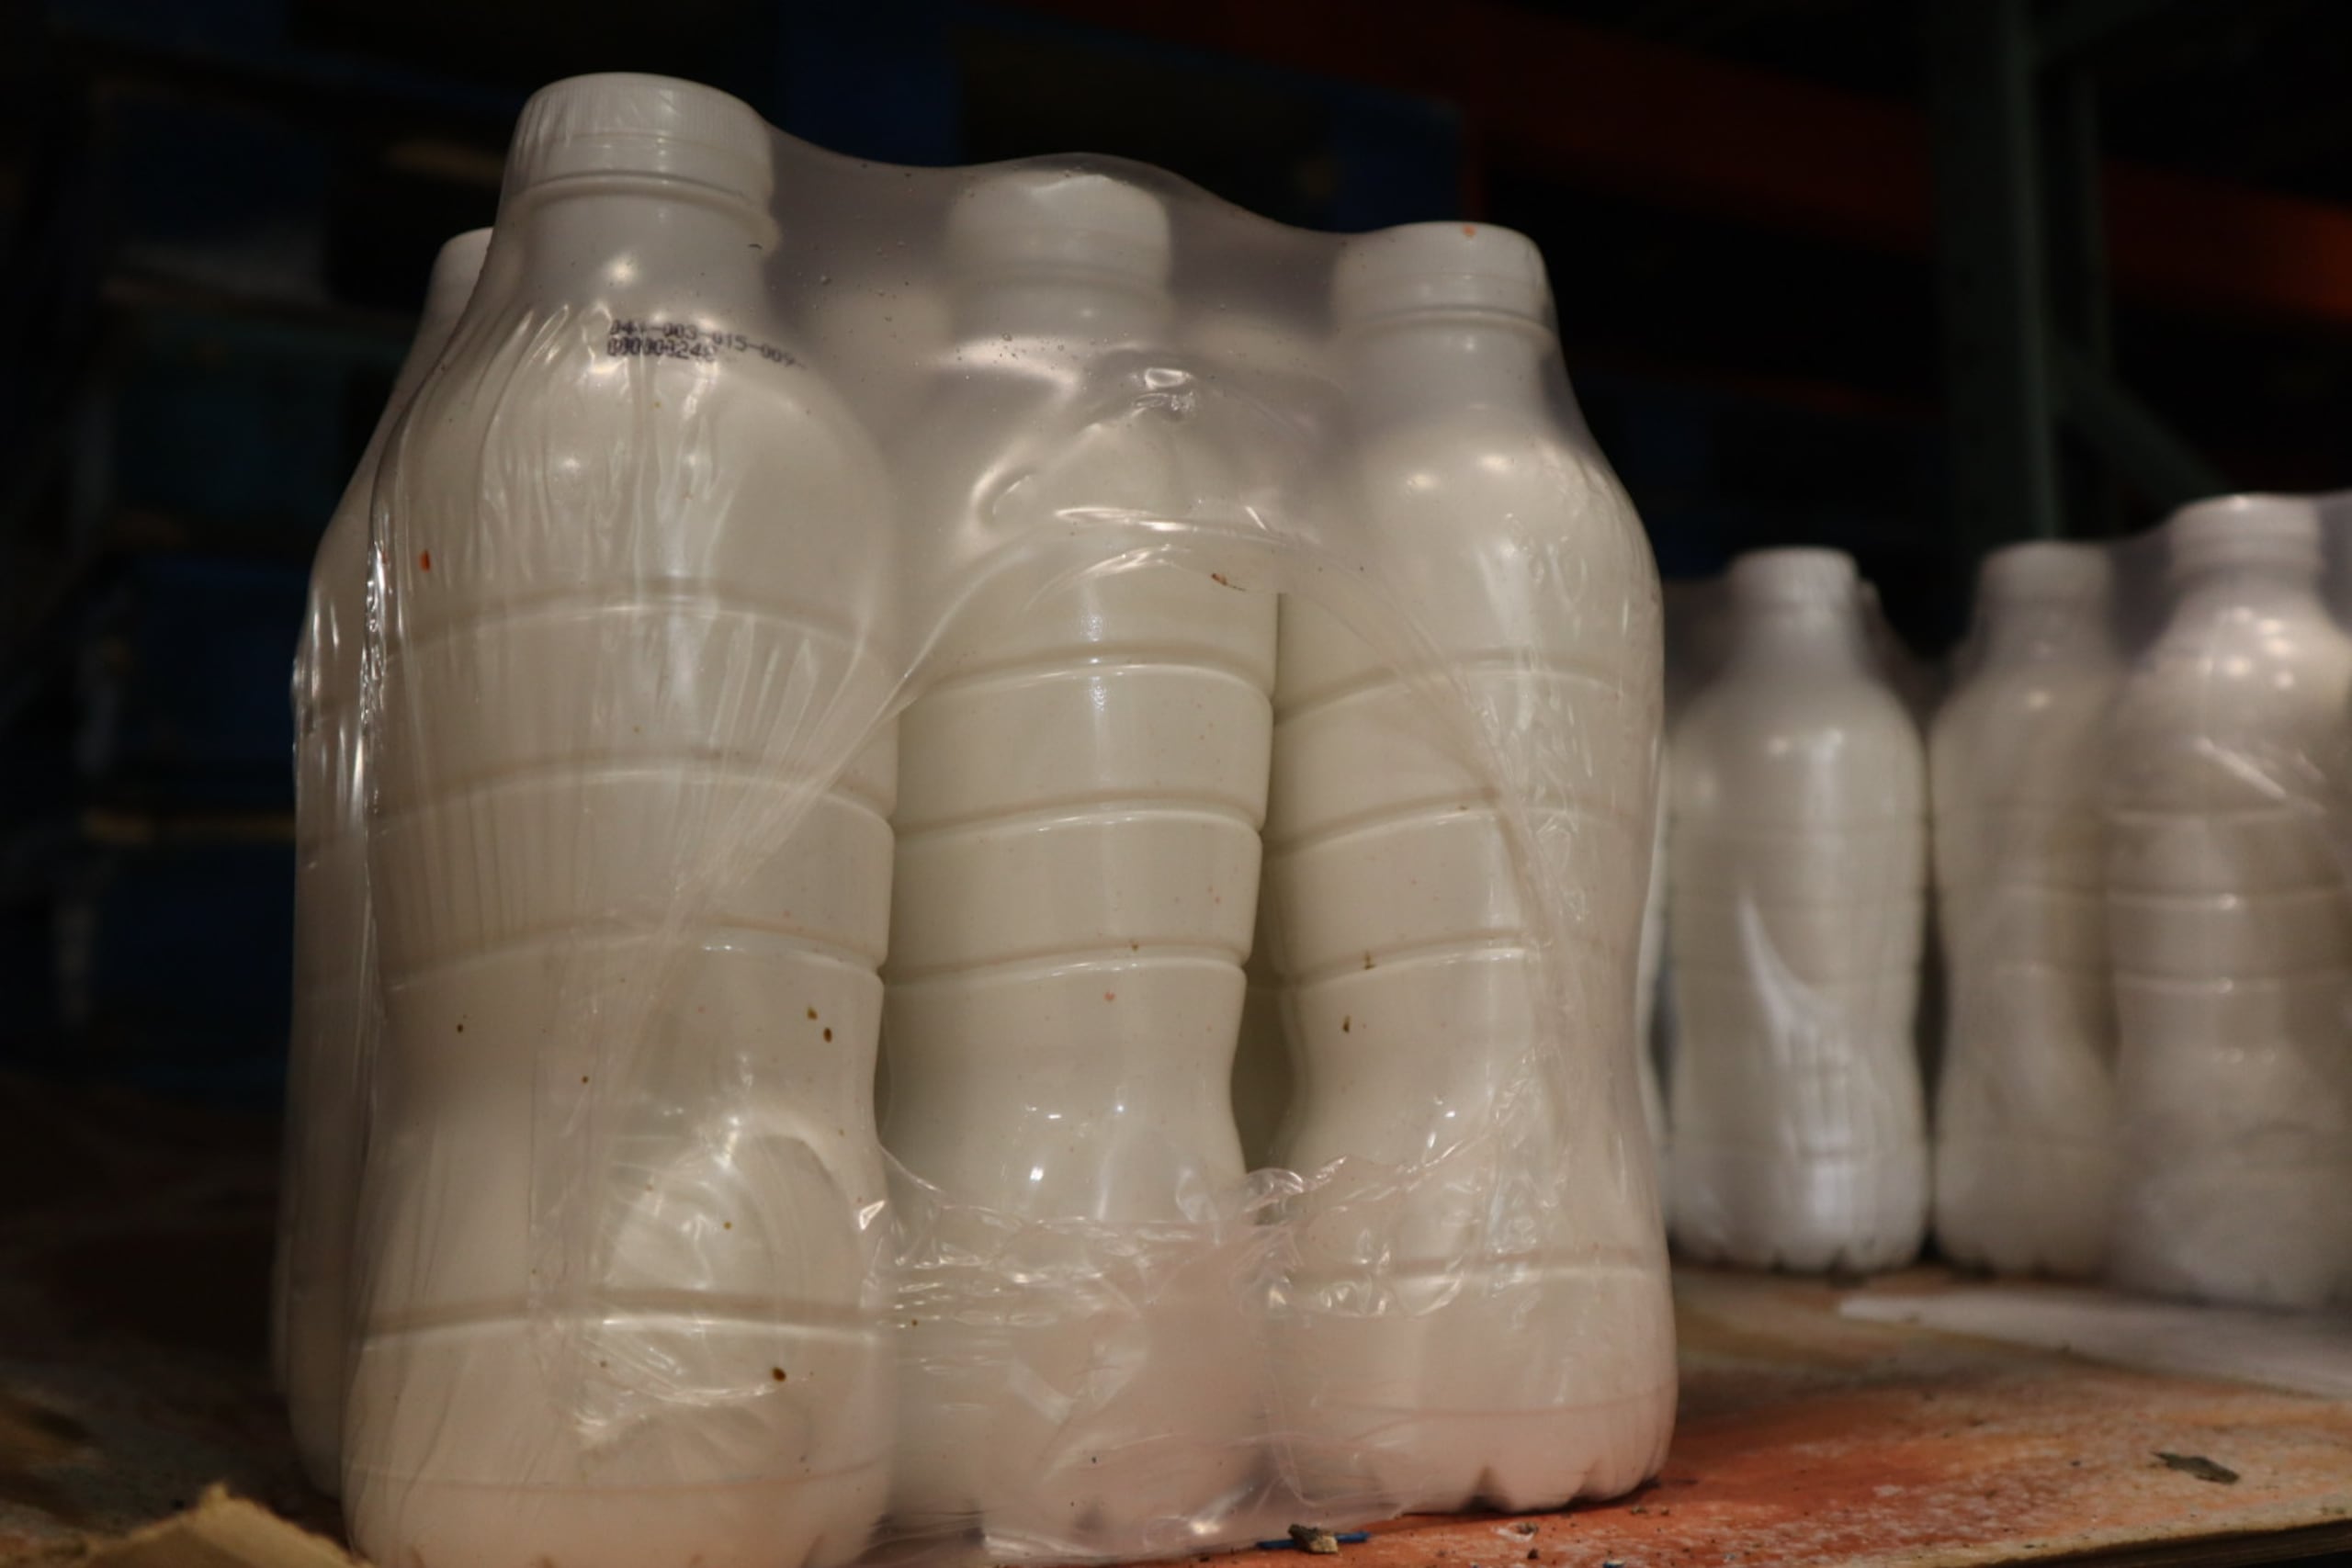 Las 80 vaquerías -de 240 que hay en la isla- que tuvieron que descartar miles de litros de leche están ubicadas en Hatillo, Isabela, Quebradillas, Manatí, Morovis, Aguadilla y San Sebastián.